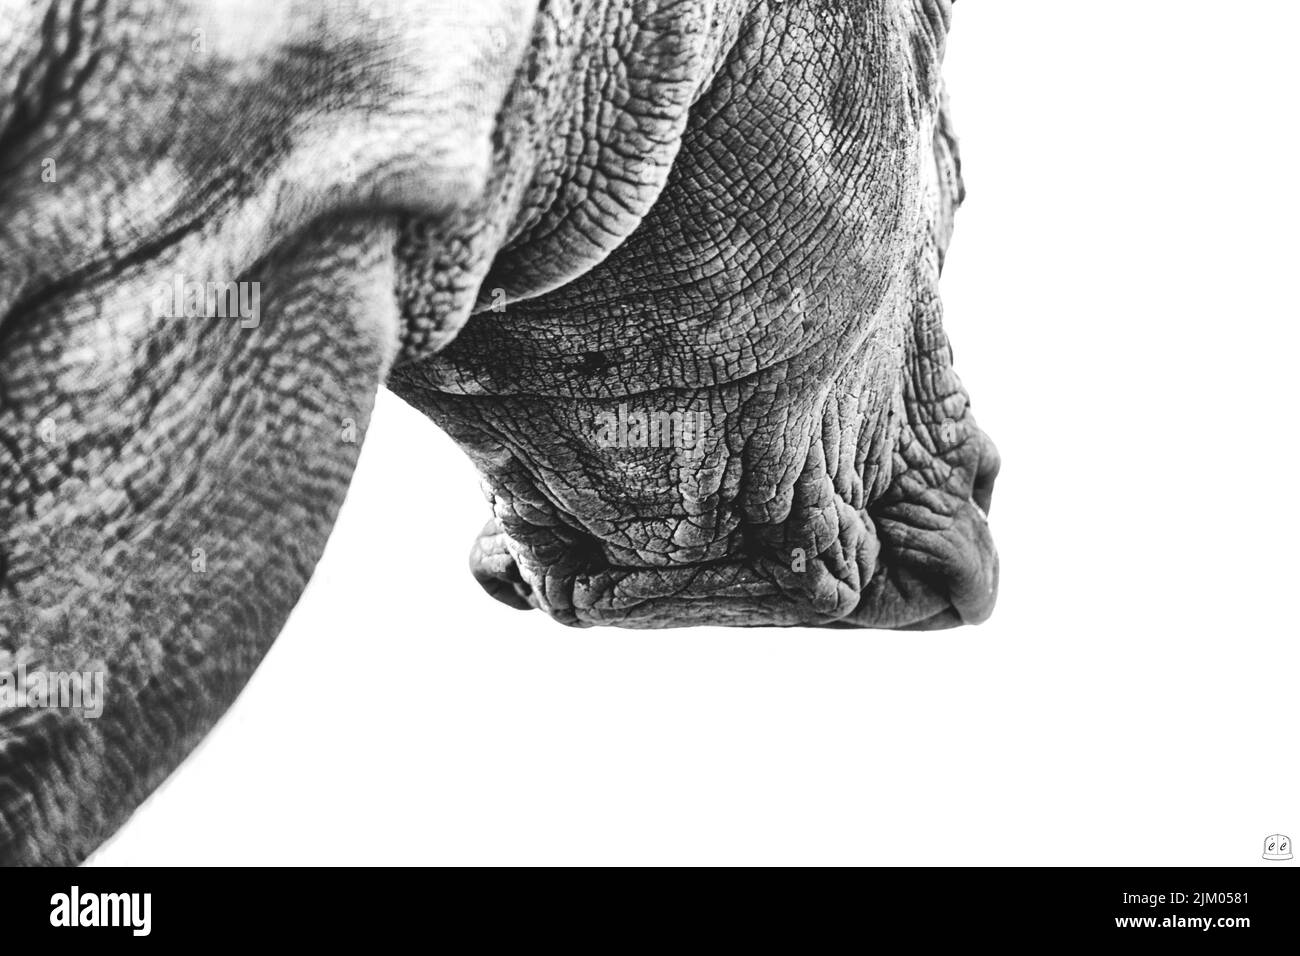 Eine schräge Graustufenaufnahme eines Nashorns mit faltiger Haut auf weißem Hintergrund Stockfoto